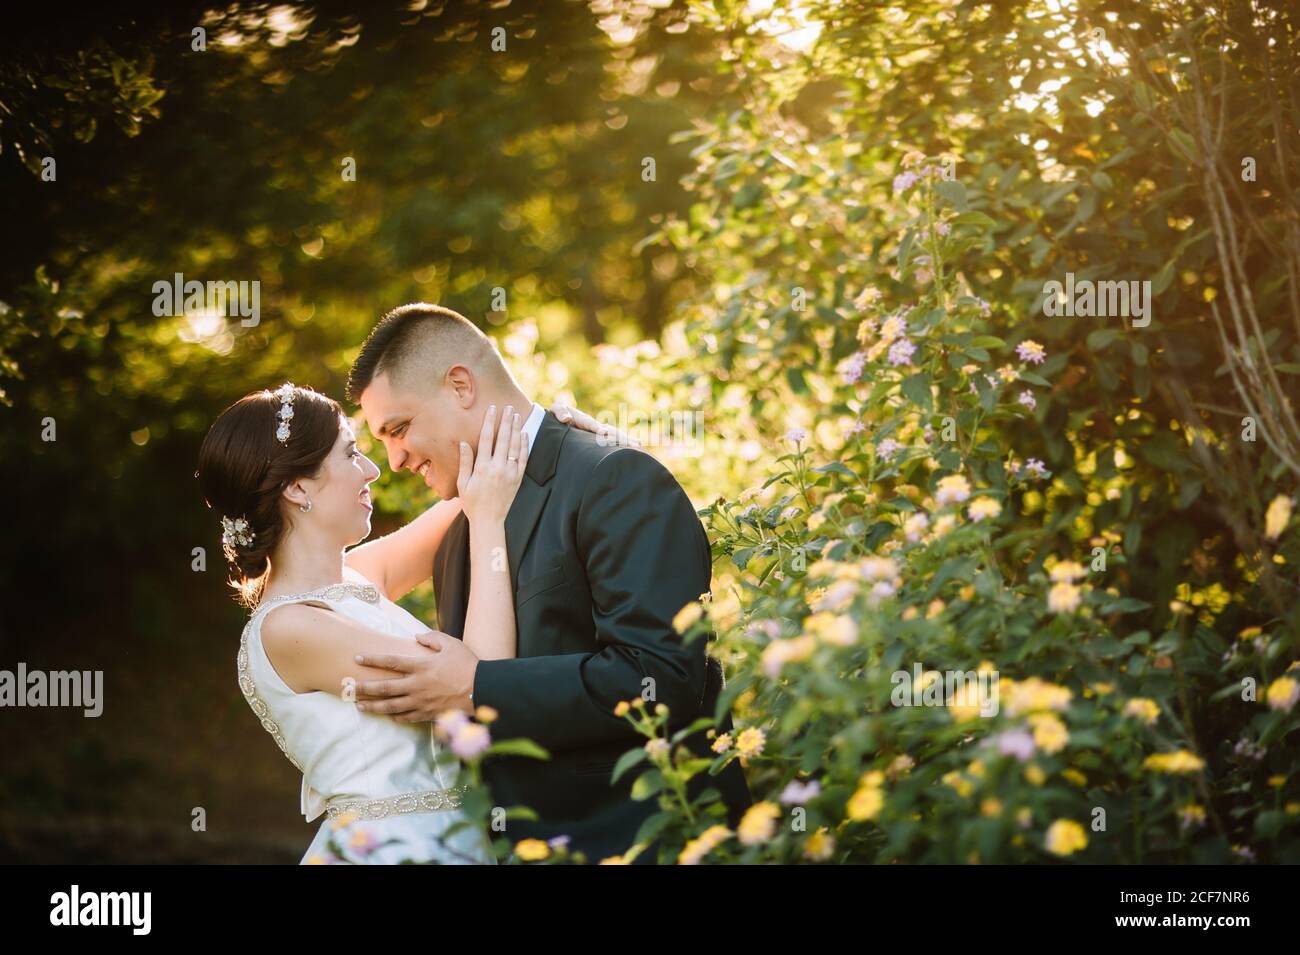 Seitenansicht der anmutigen zarten Brautpaar Bonding und suchen An die Augen mit Liebe zwischen leuchtend gelben Blumen und Büschen Im Garten Stockfoto